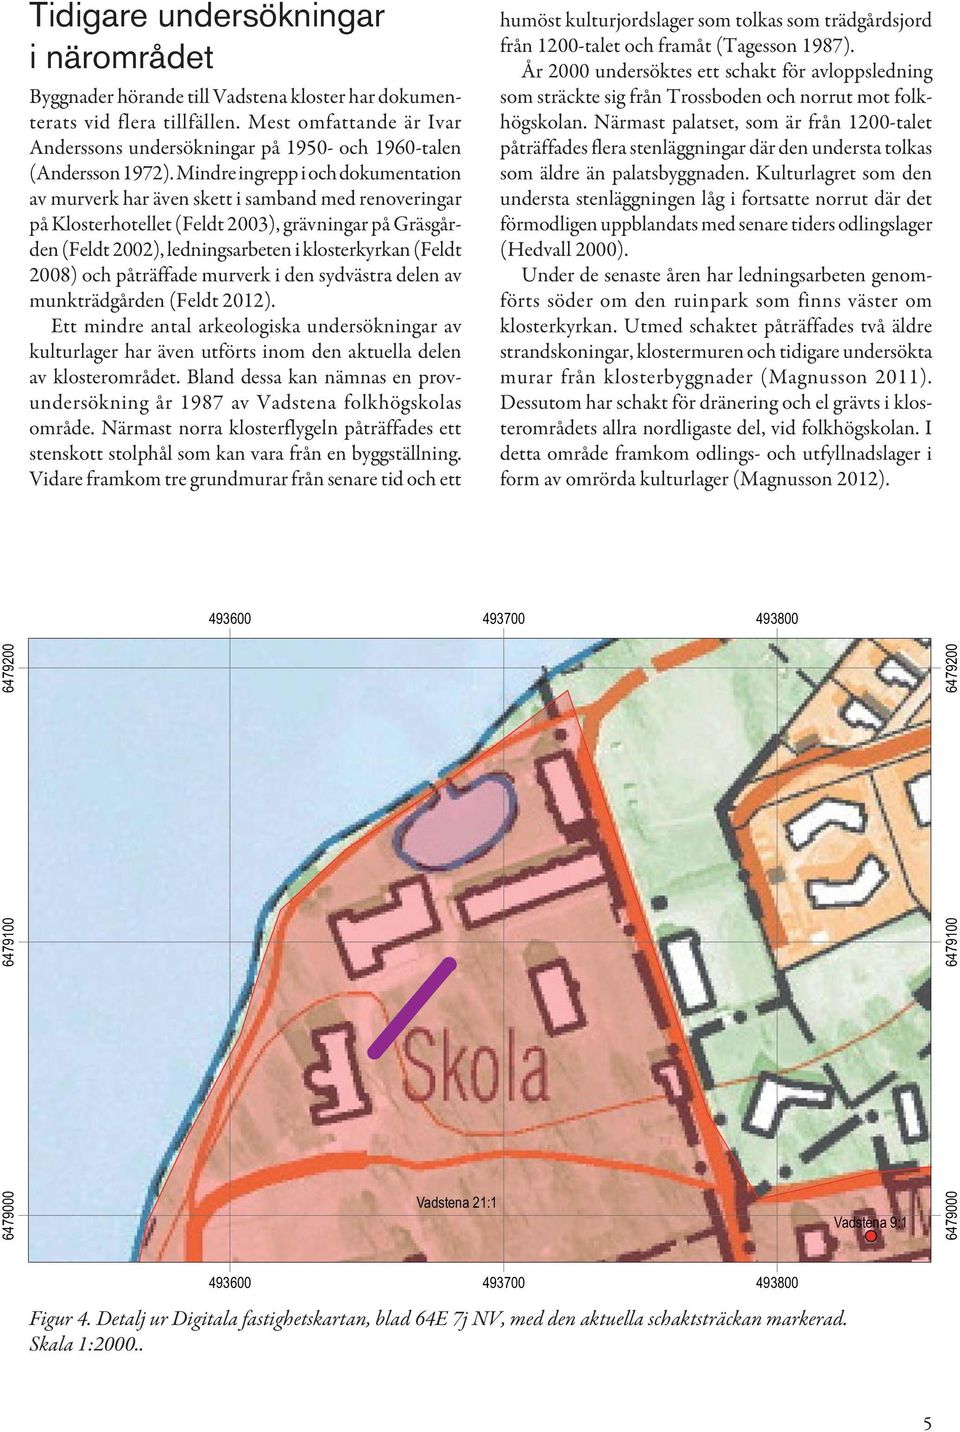 Mindre ingrepp i och doku mentation av murverk har även skett i samband med renoveringar på Klosterhotellet (Feldt 2003), grävningar på Gräsgården (Feldt 2002), ledningsarbeten i klosterkyrkan (Feldt